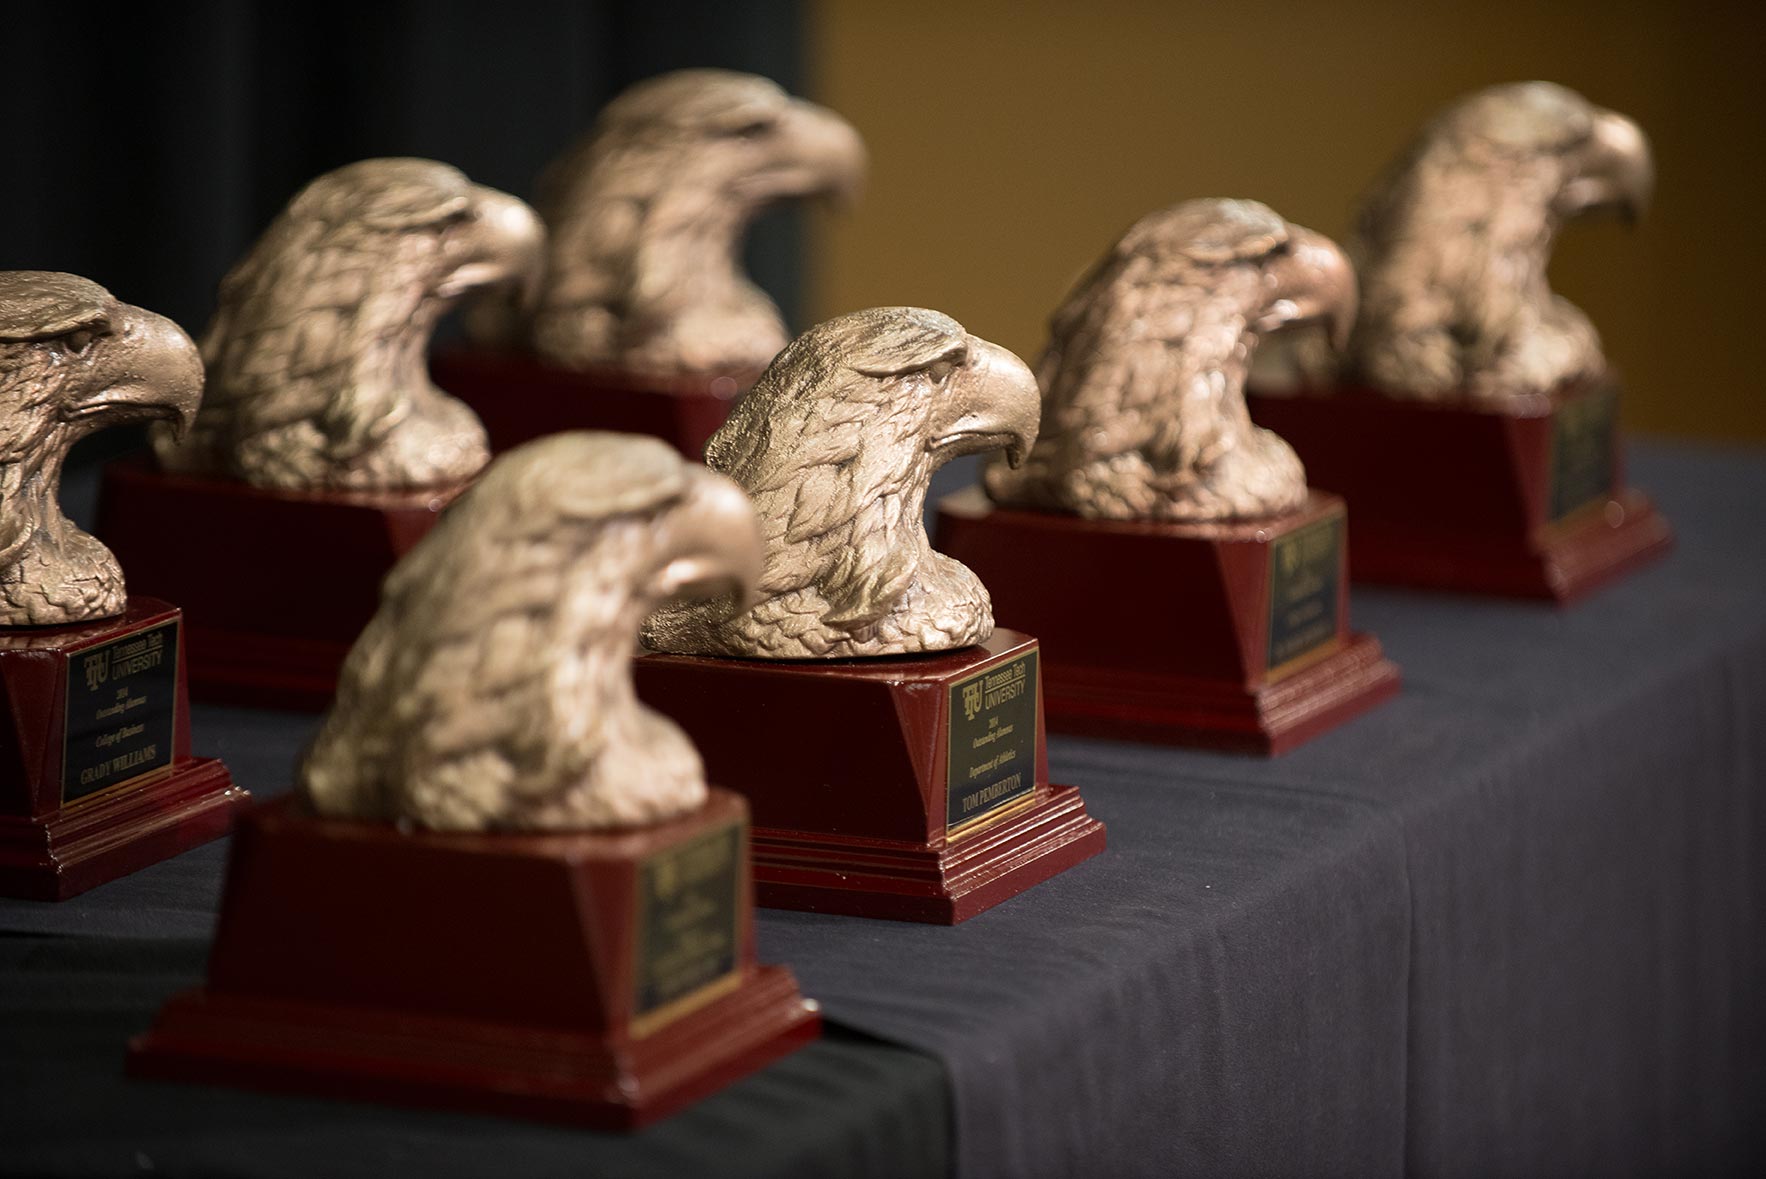 Eagle head alumni award statuettes